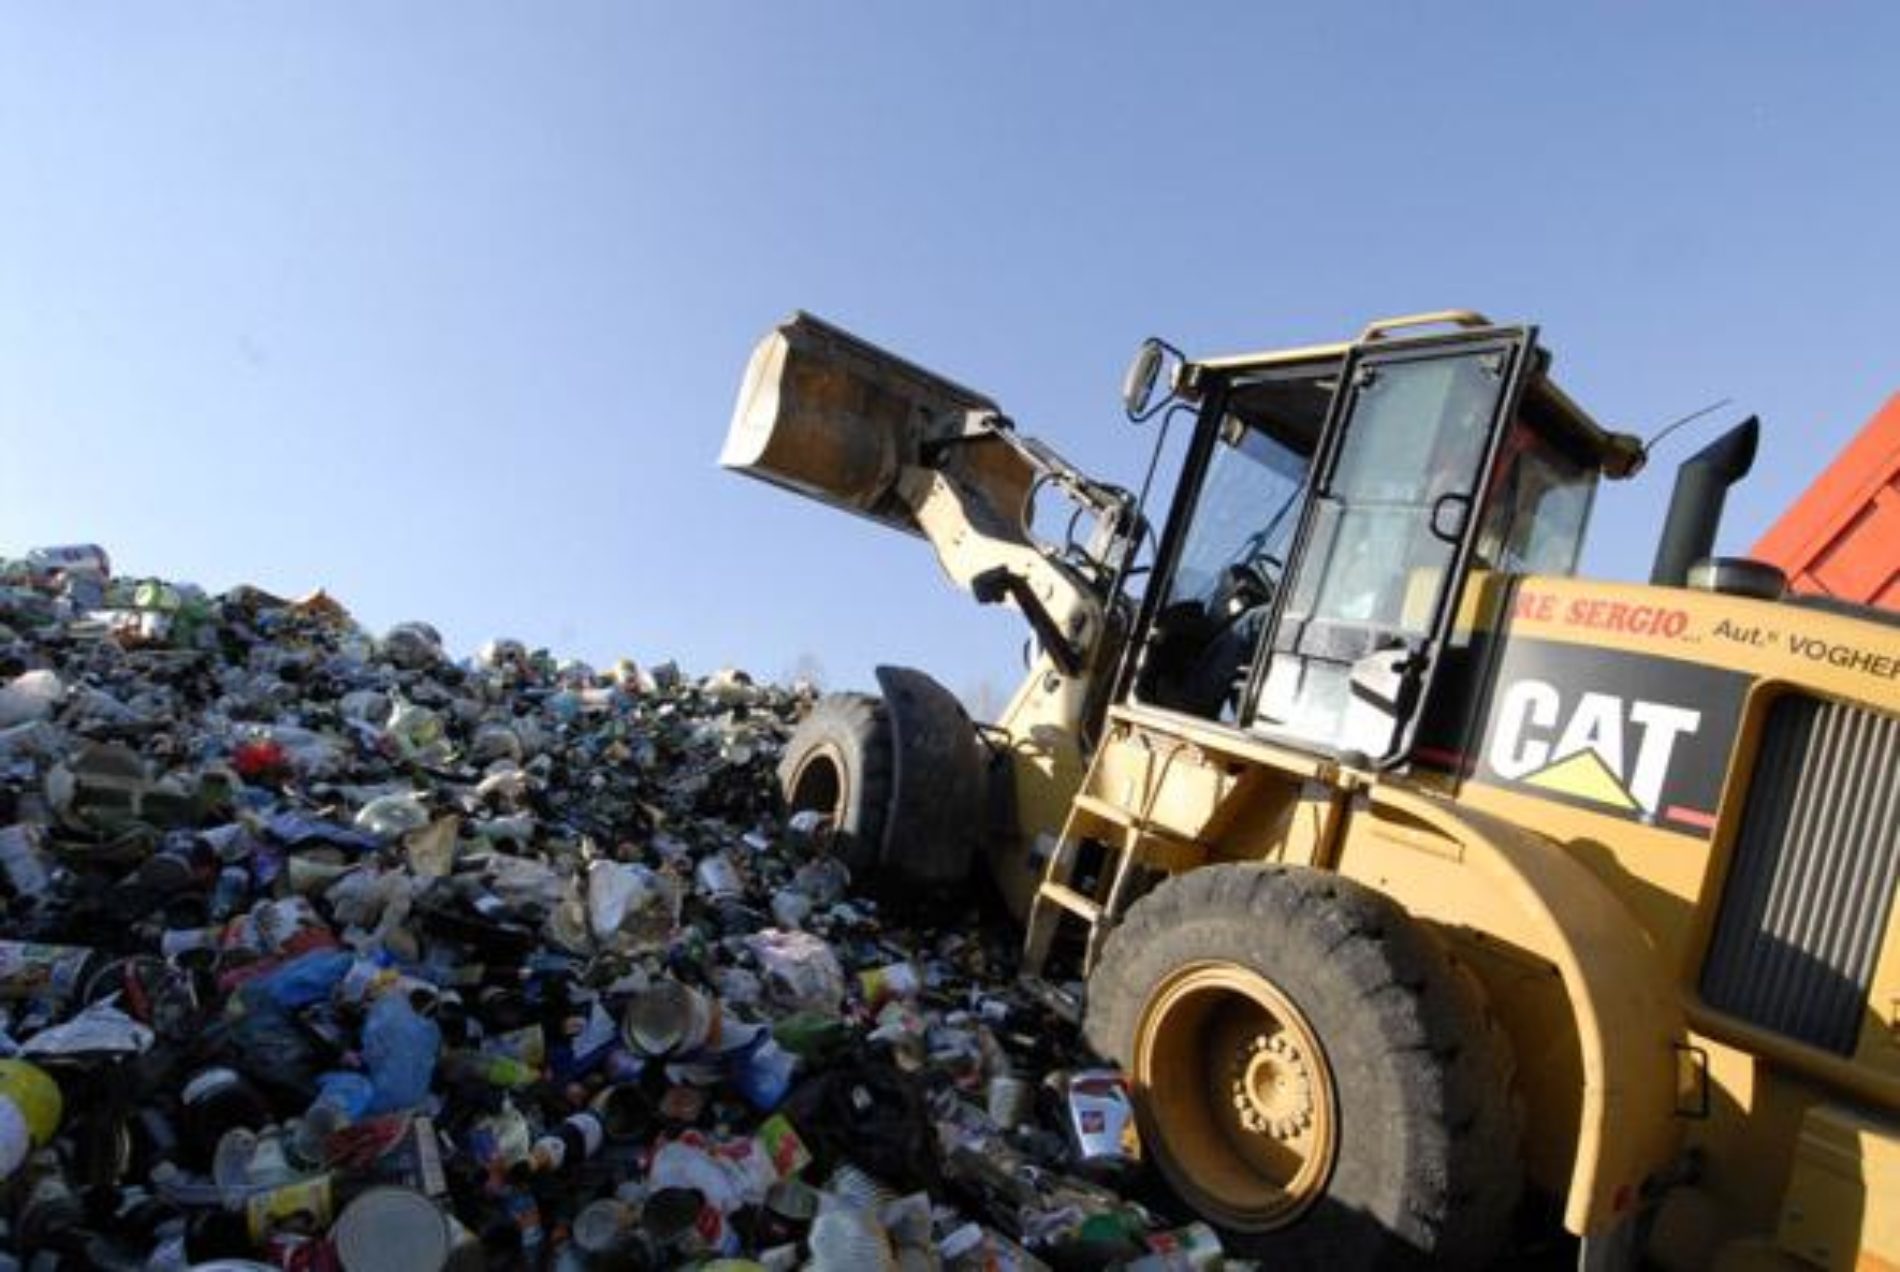 Mezzi dell’Ato per liberare dai rifiuti i sei punti dove sono presenti in enorme quantità